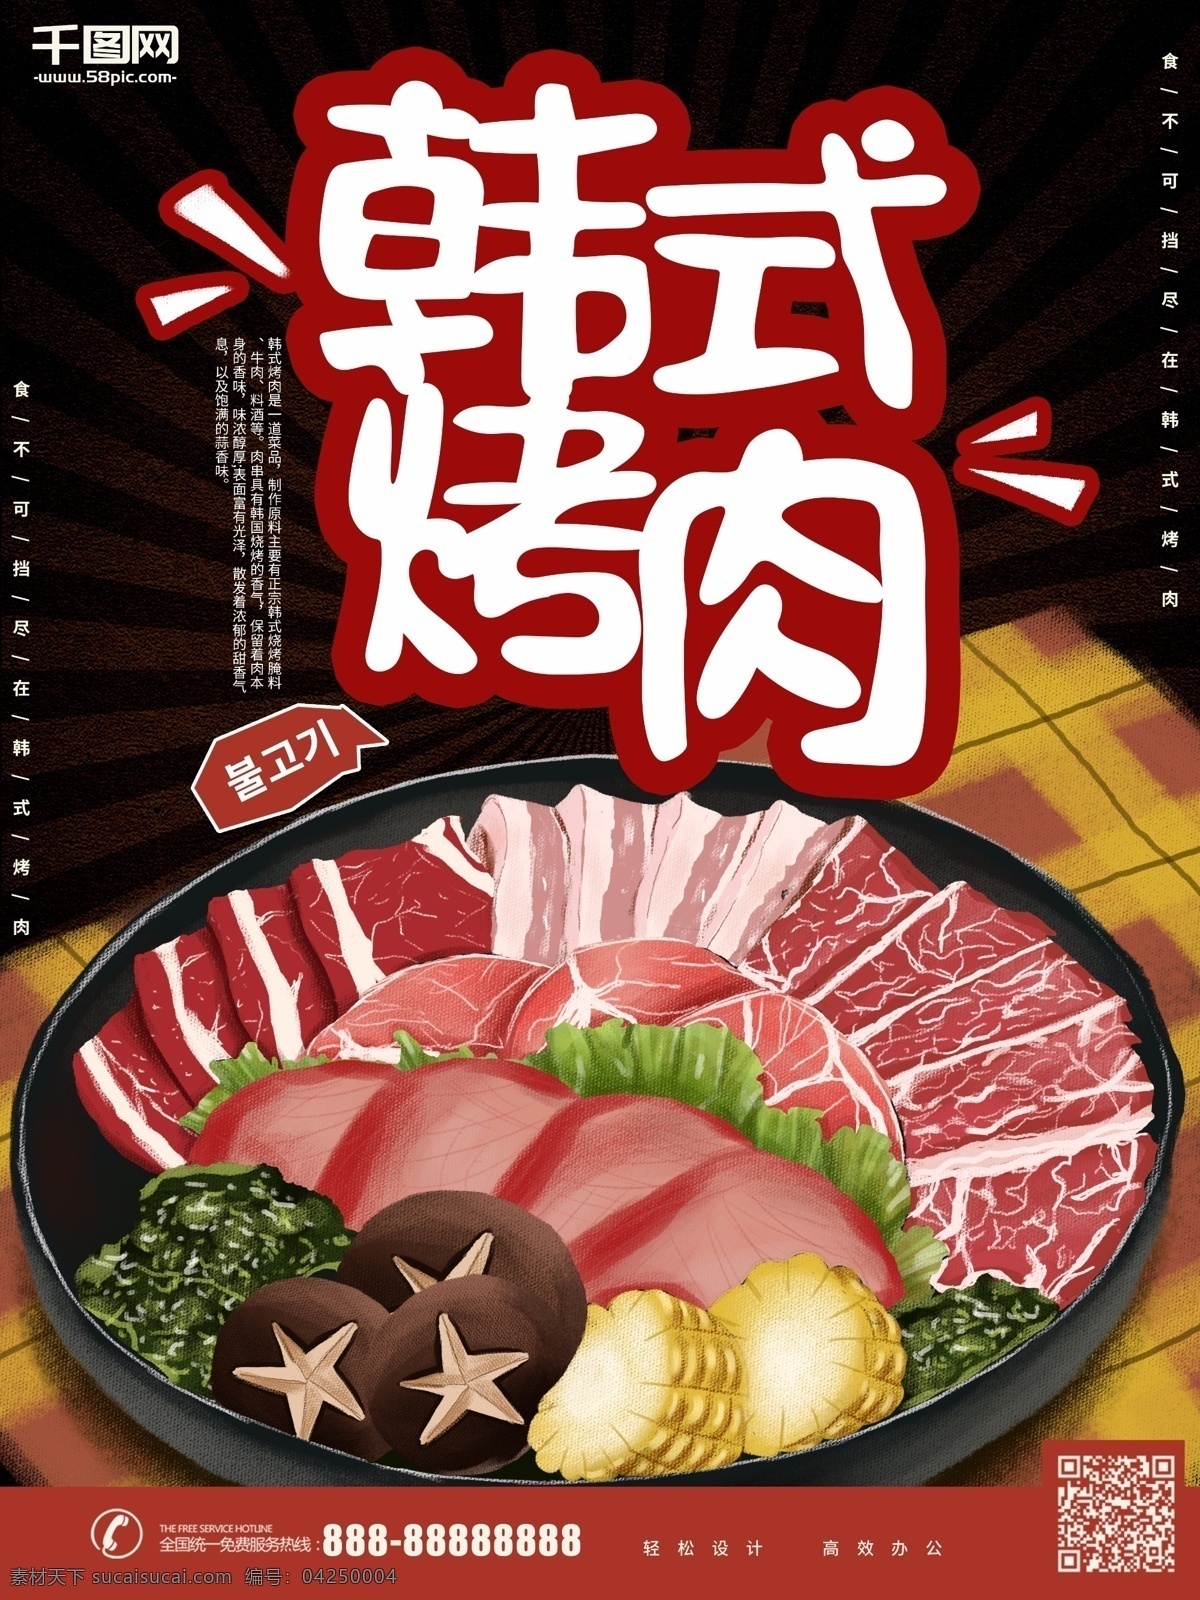 原创 手绘 插画 韩式 烤肉 海报 卡通 美食 烧烤 宣传 韩式烤肉 韩国烤肉 活动